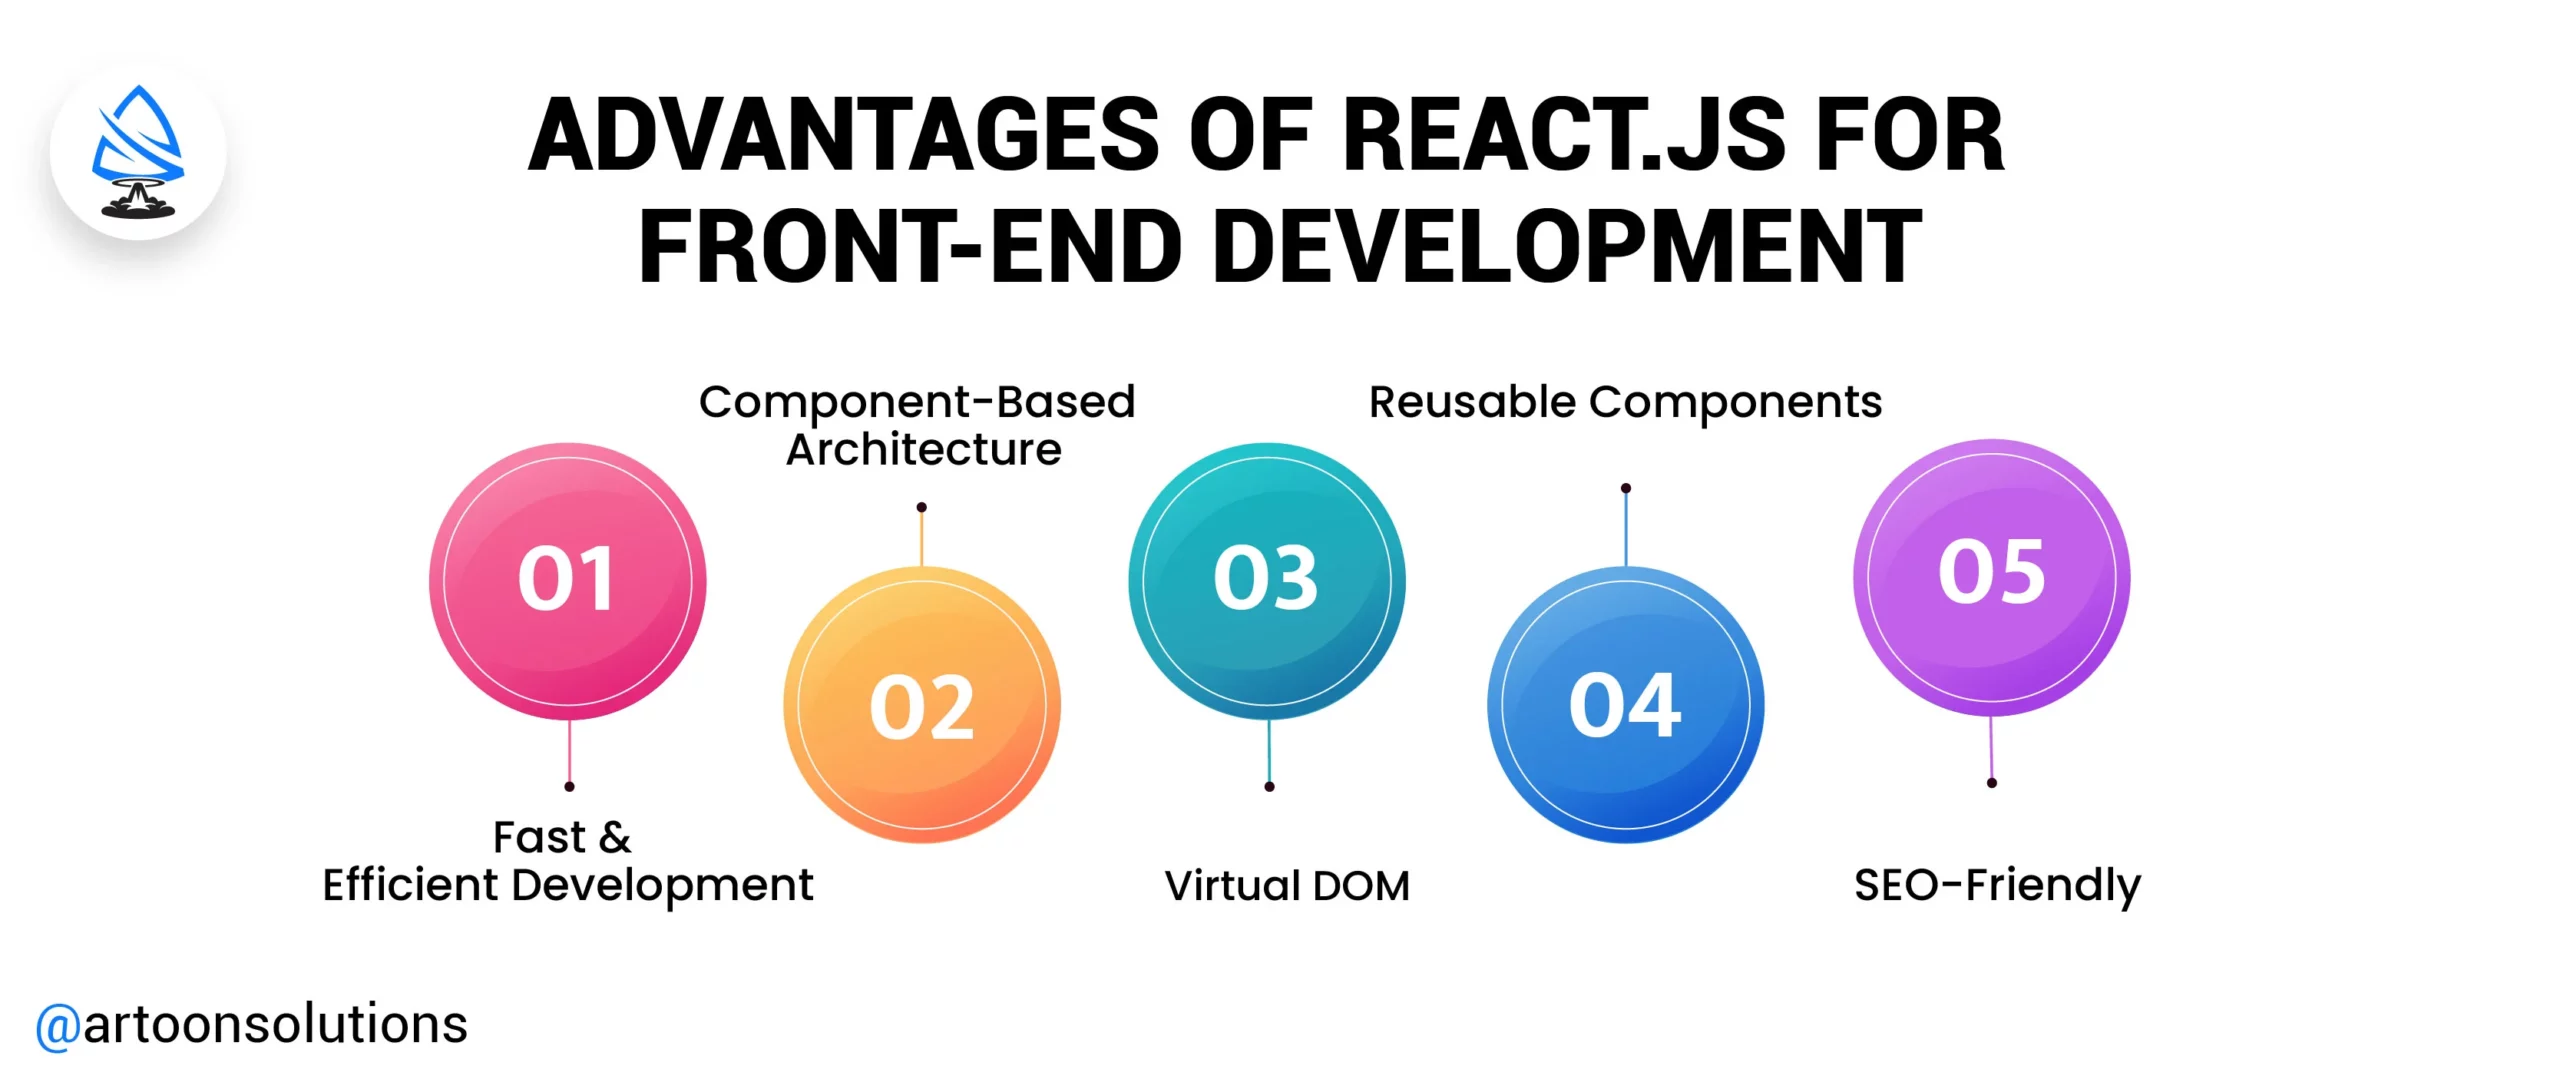 Advantages of React.js for Front-end Development